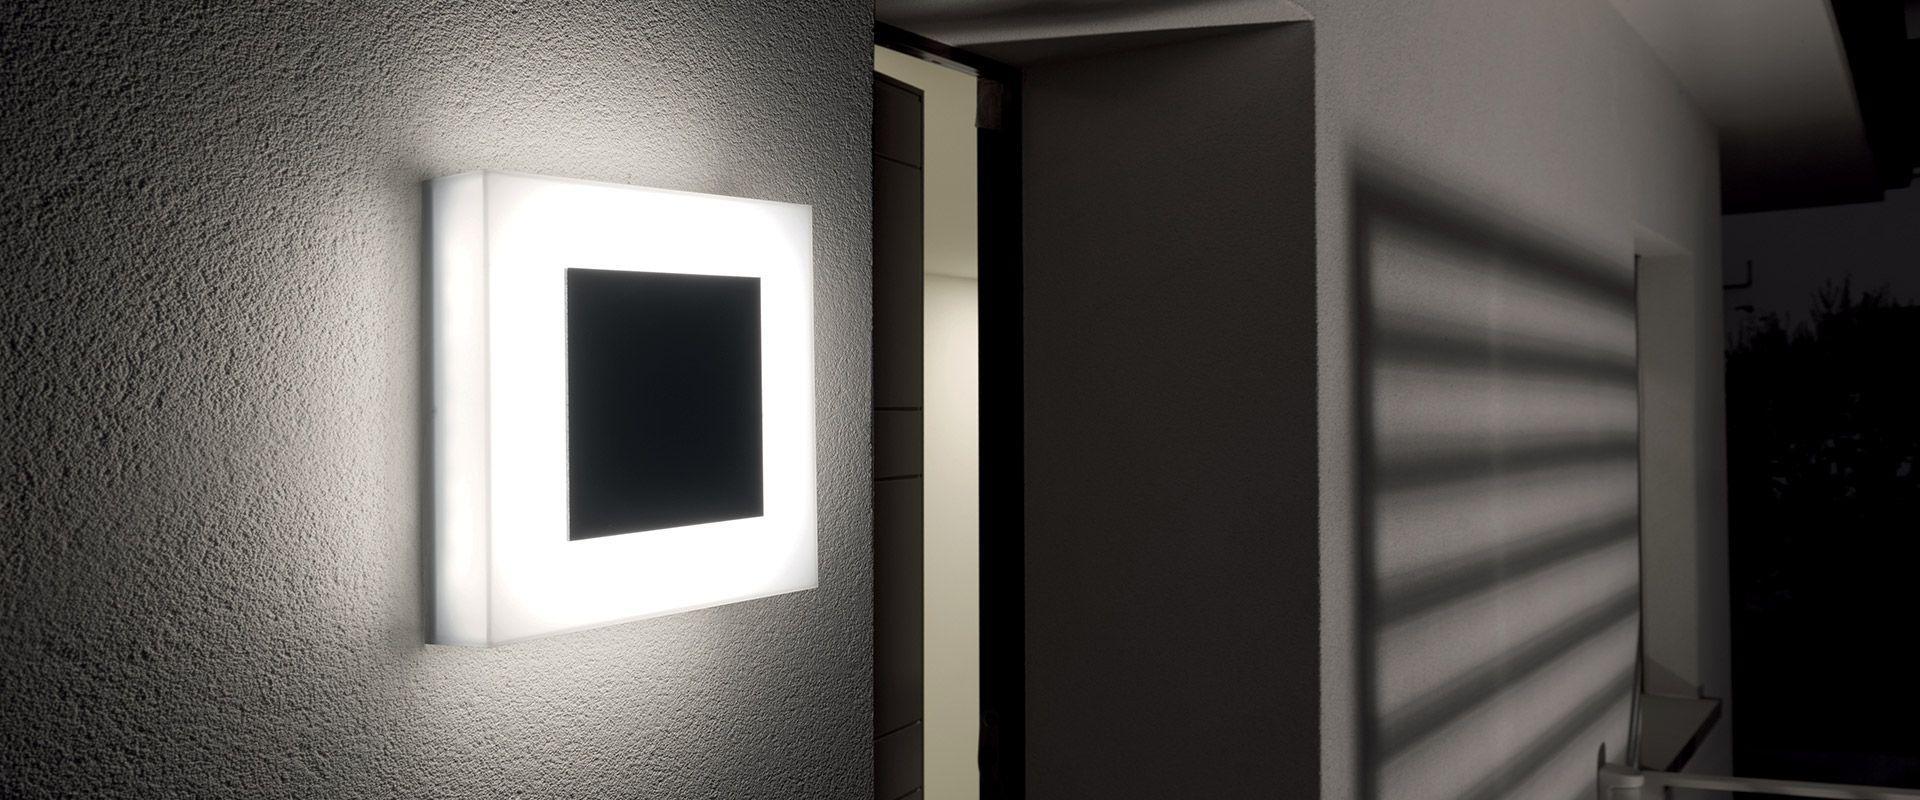 Lampada applique LED LOMBARDO ART 250 MASK, 17W, 2040 lumen, colore luce bianca naturale 4000K, colore decorazione nero. 